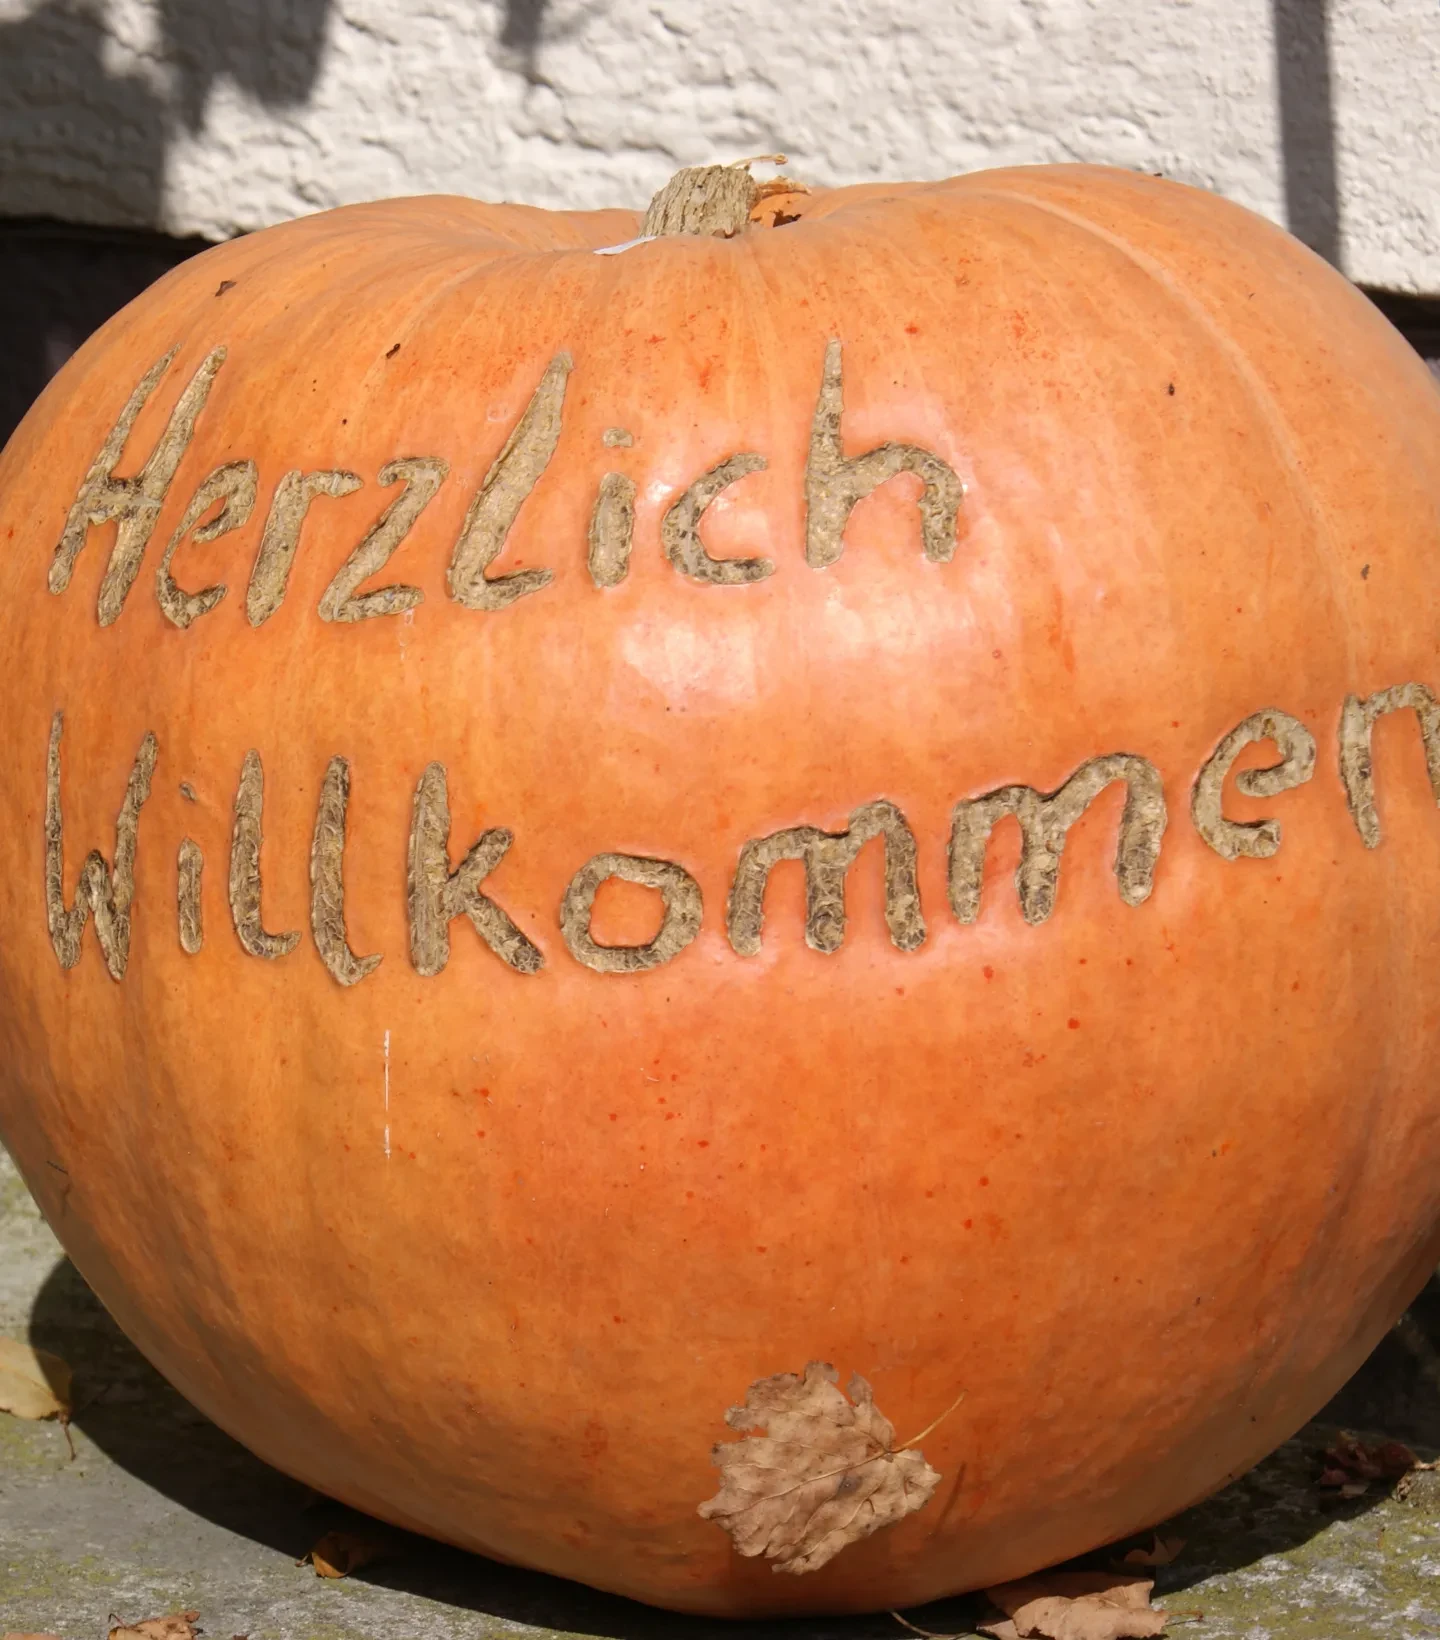 Hallerbauer Wals_Kürbis mit Inschrift Herzlich willkommen